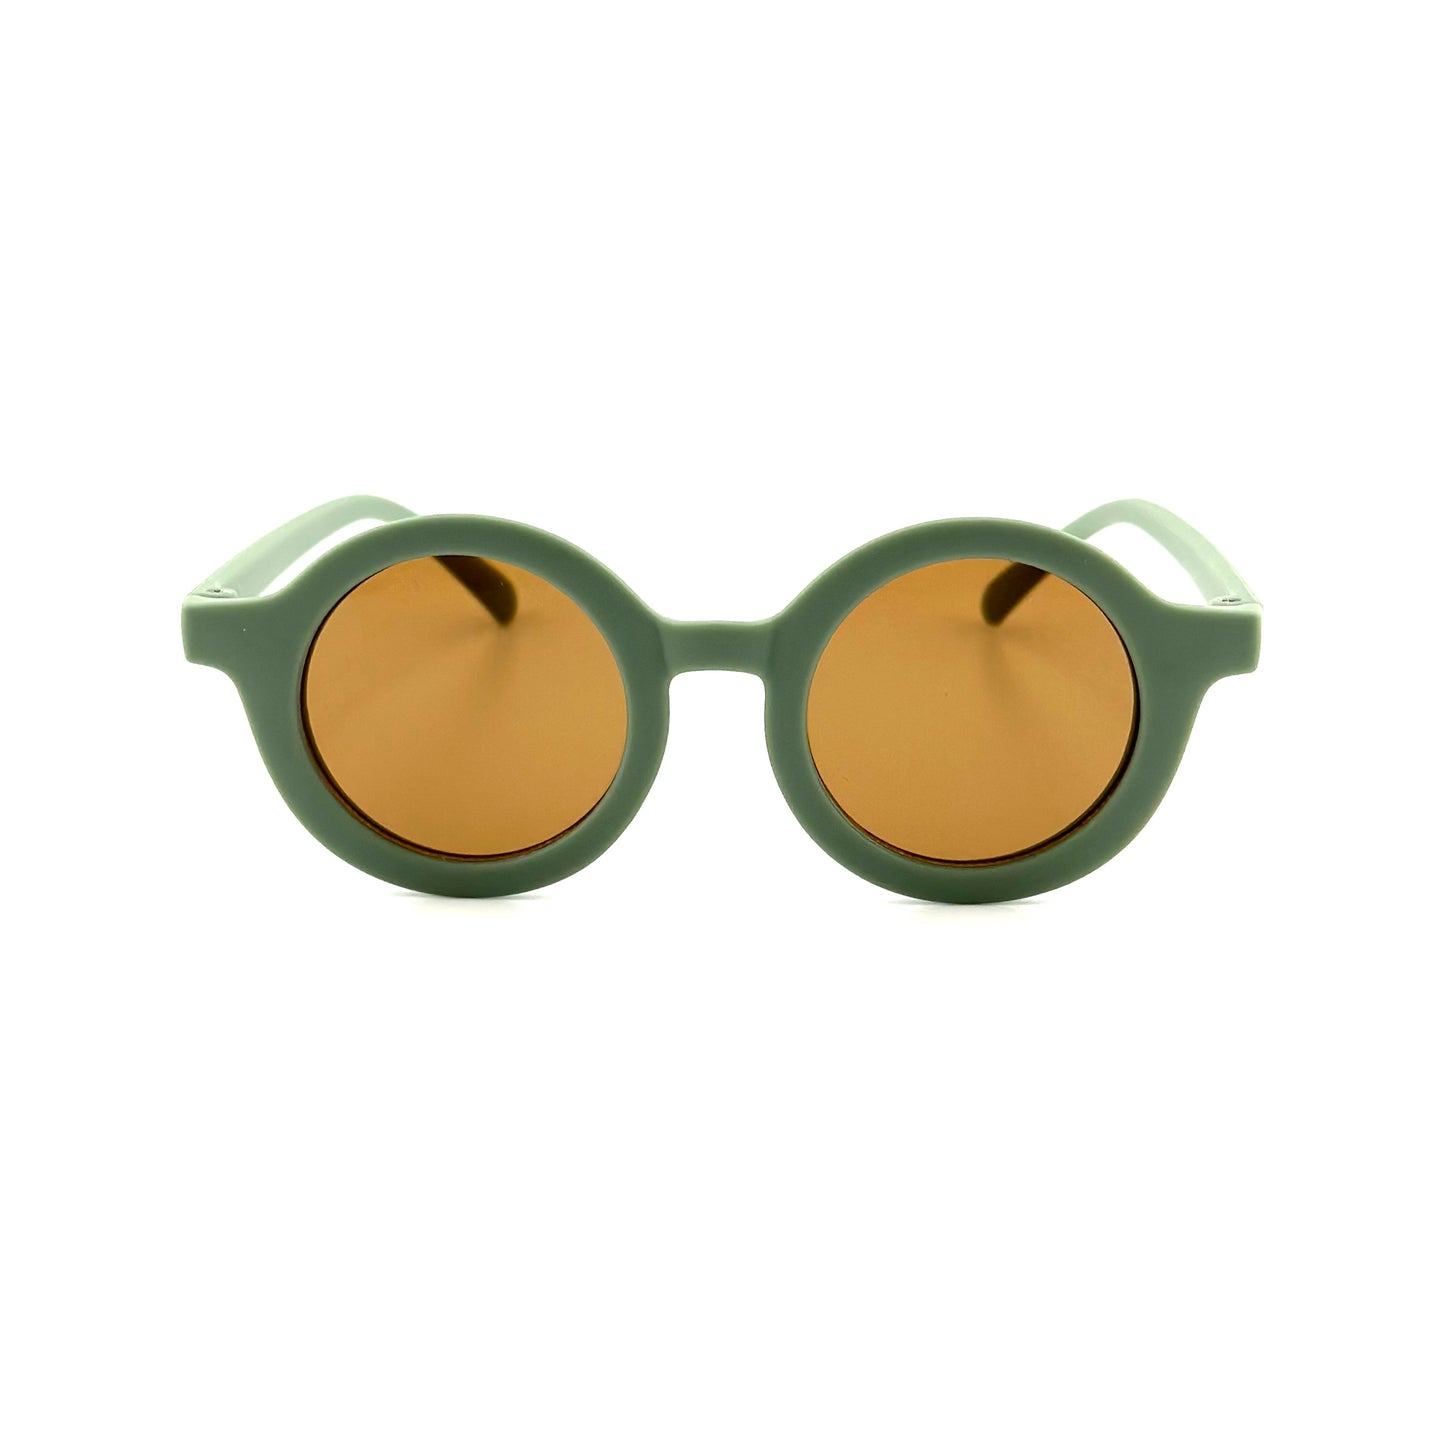 
                  
                    Gafas de sol bebé verde Sostenibles Nenina & Co
                  
                